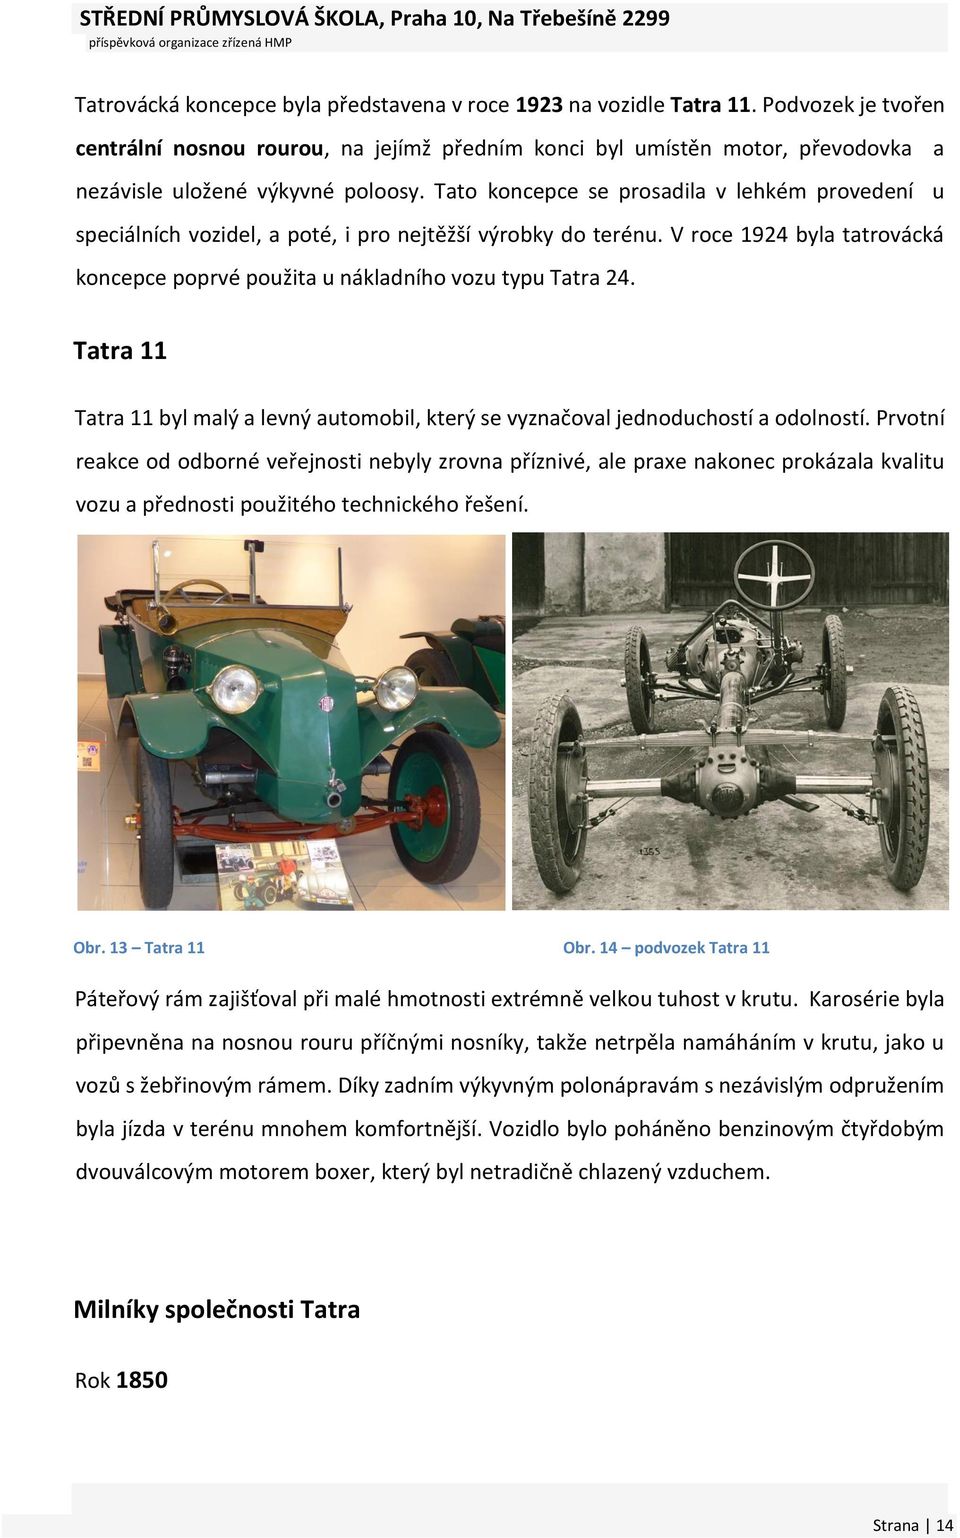 Tato koncepce se prosadila v lehkém provedení u speciálních vozidel, a poté, i pro nejtěžší výrobky do terénu. V roce 1924 byla tatrovácká koncepce poprvé použita u nákladního vozu typu Tatra 24.